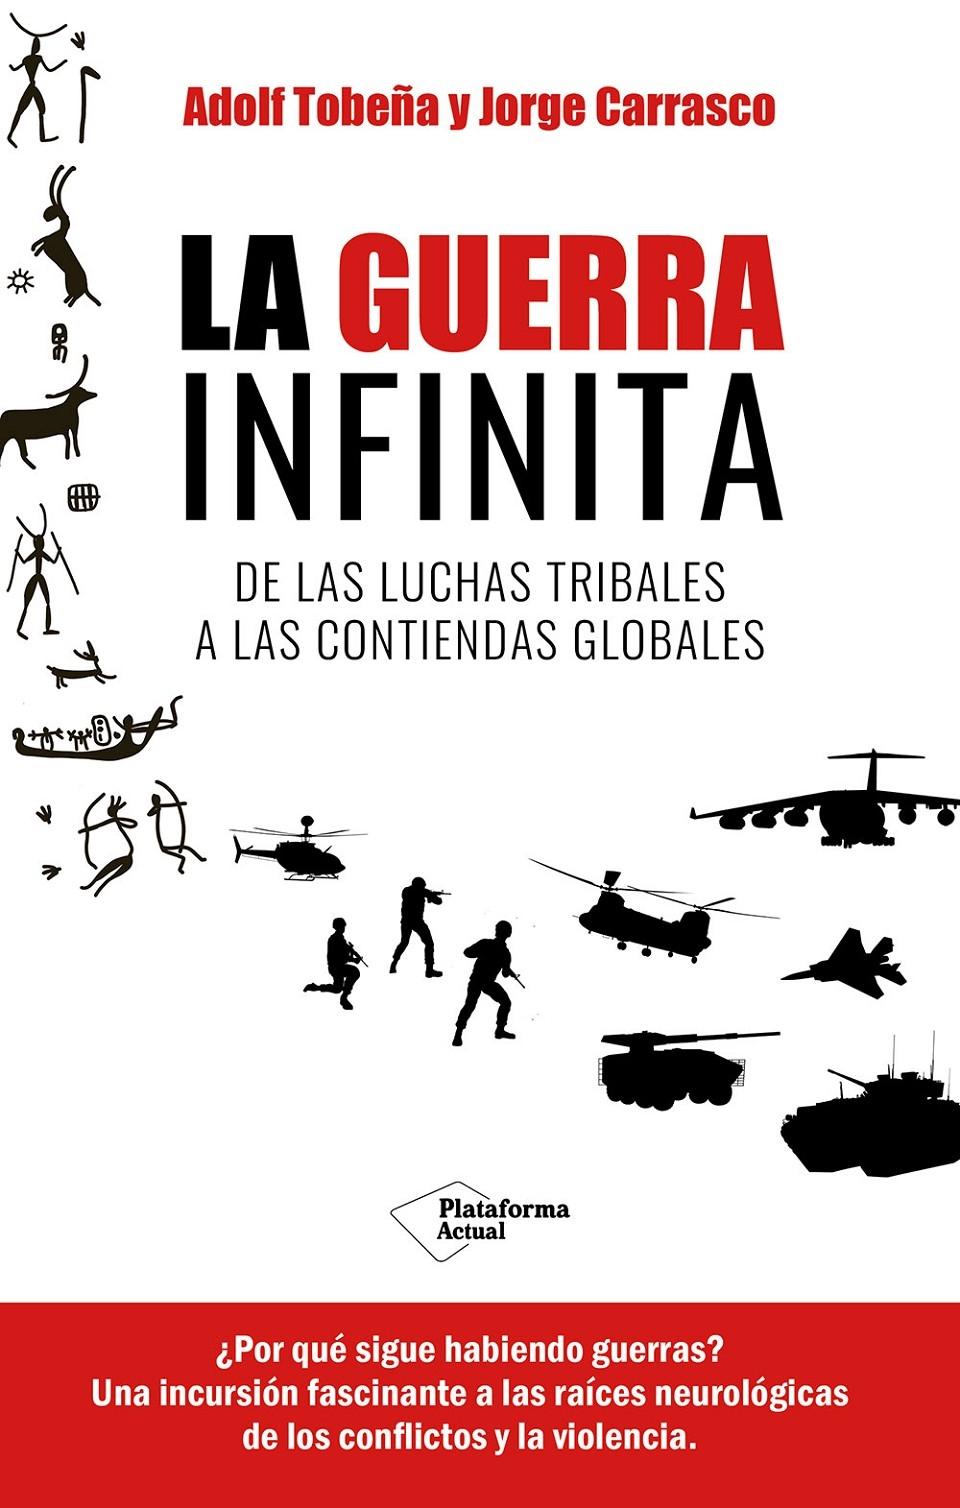 La guerra infinita "De las luchas tribales a las contiendas globales"